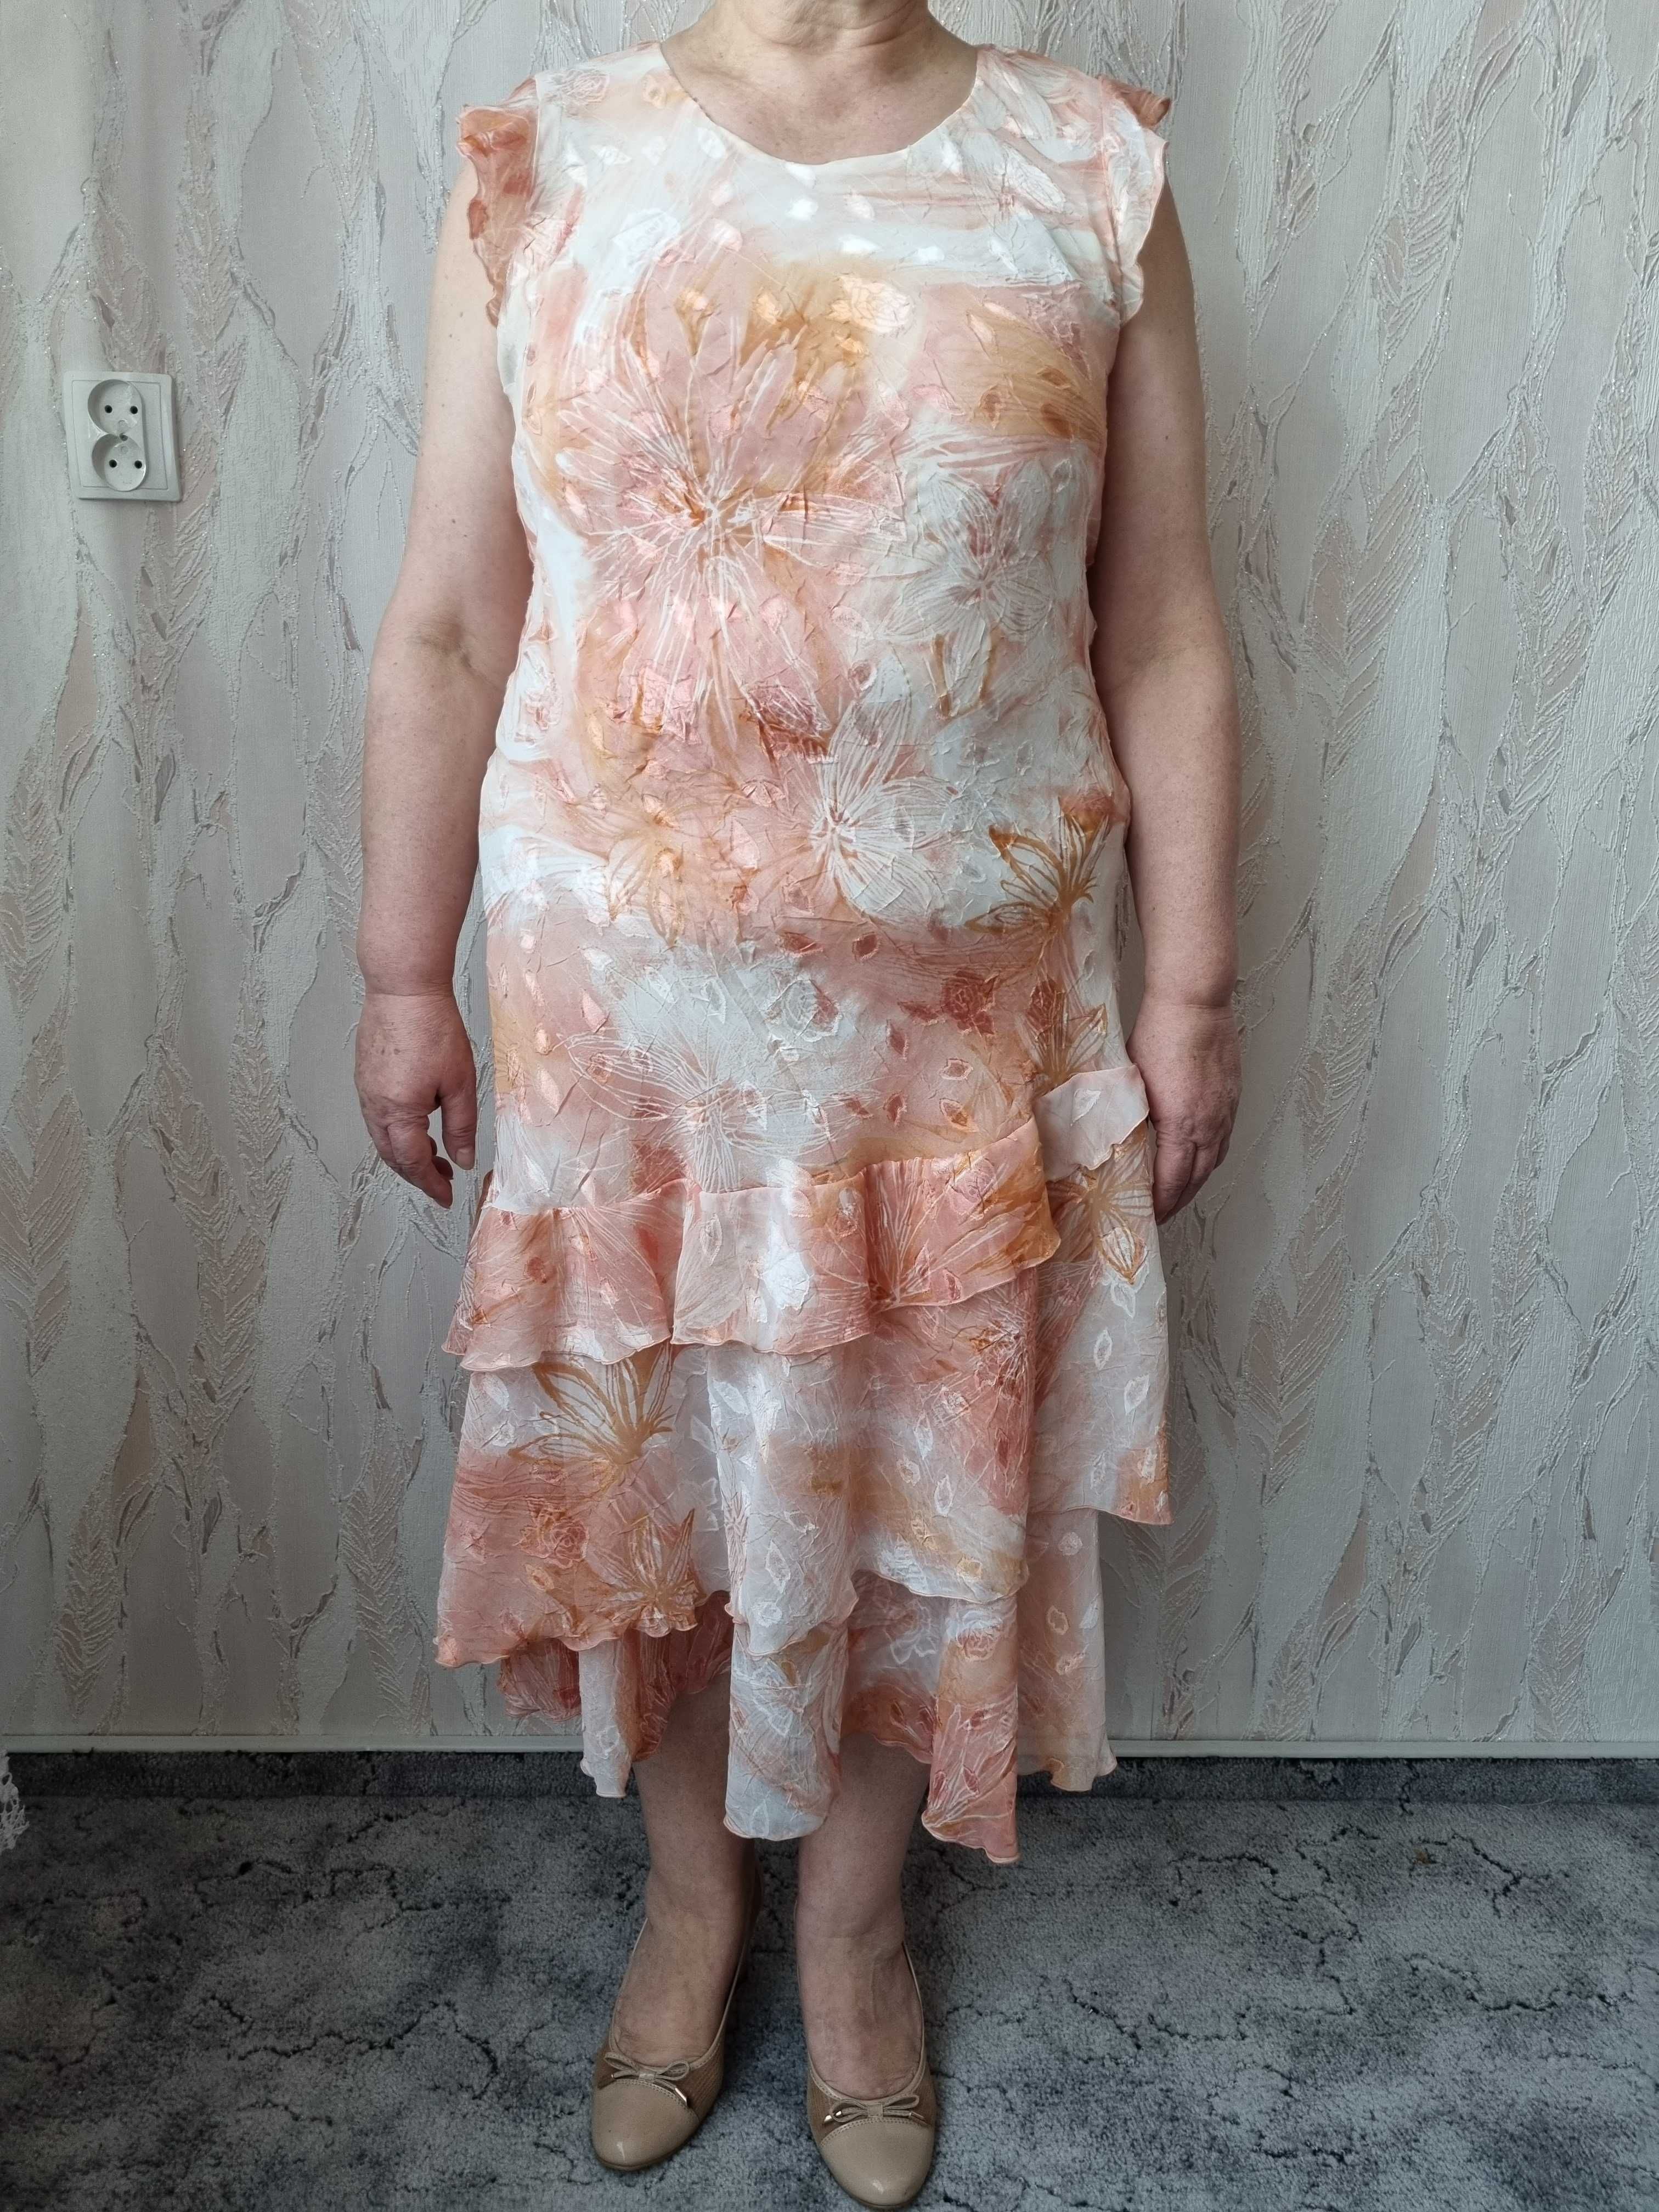 Brzoskwiniowa garsonka na wesele Dana r. 46 sukienka+żakiet